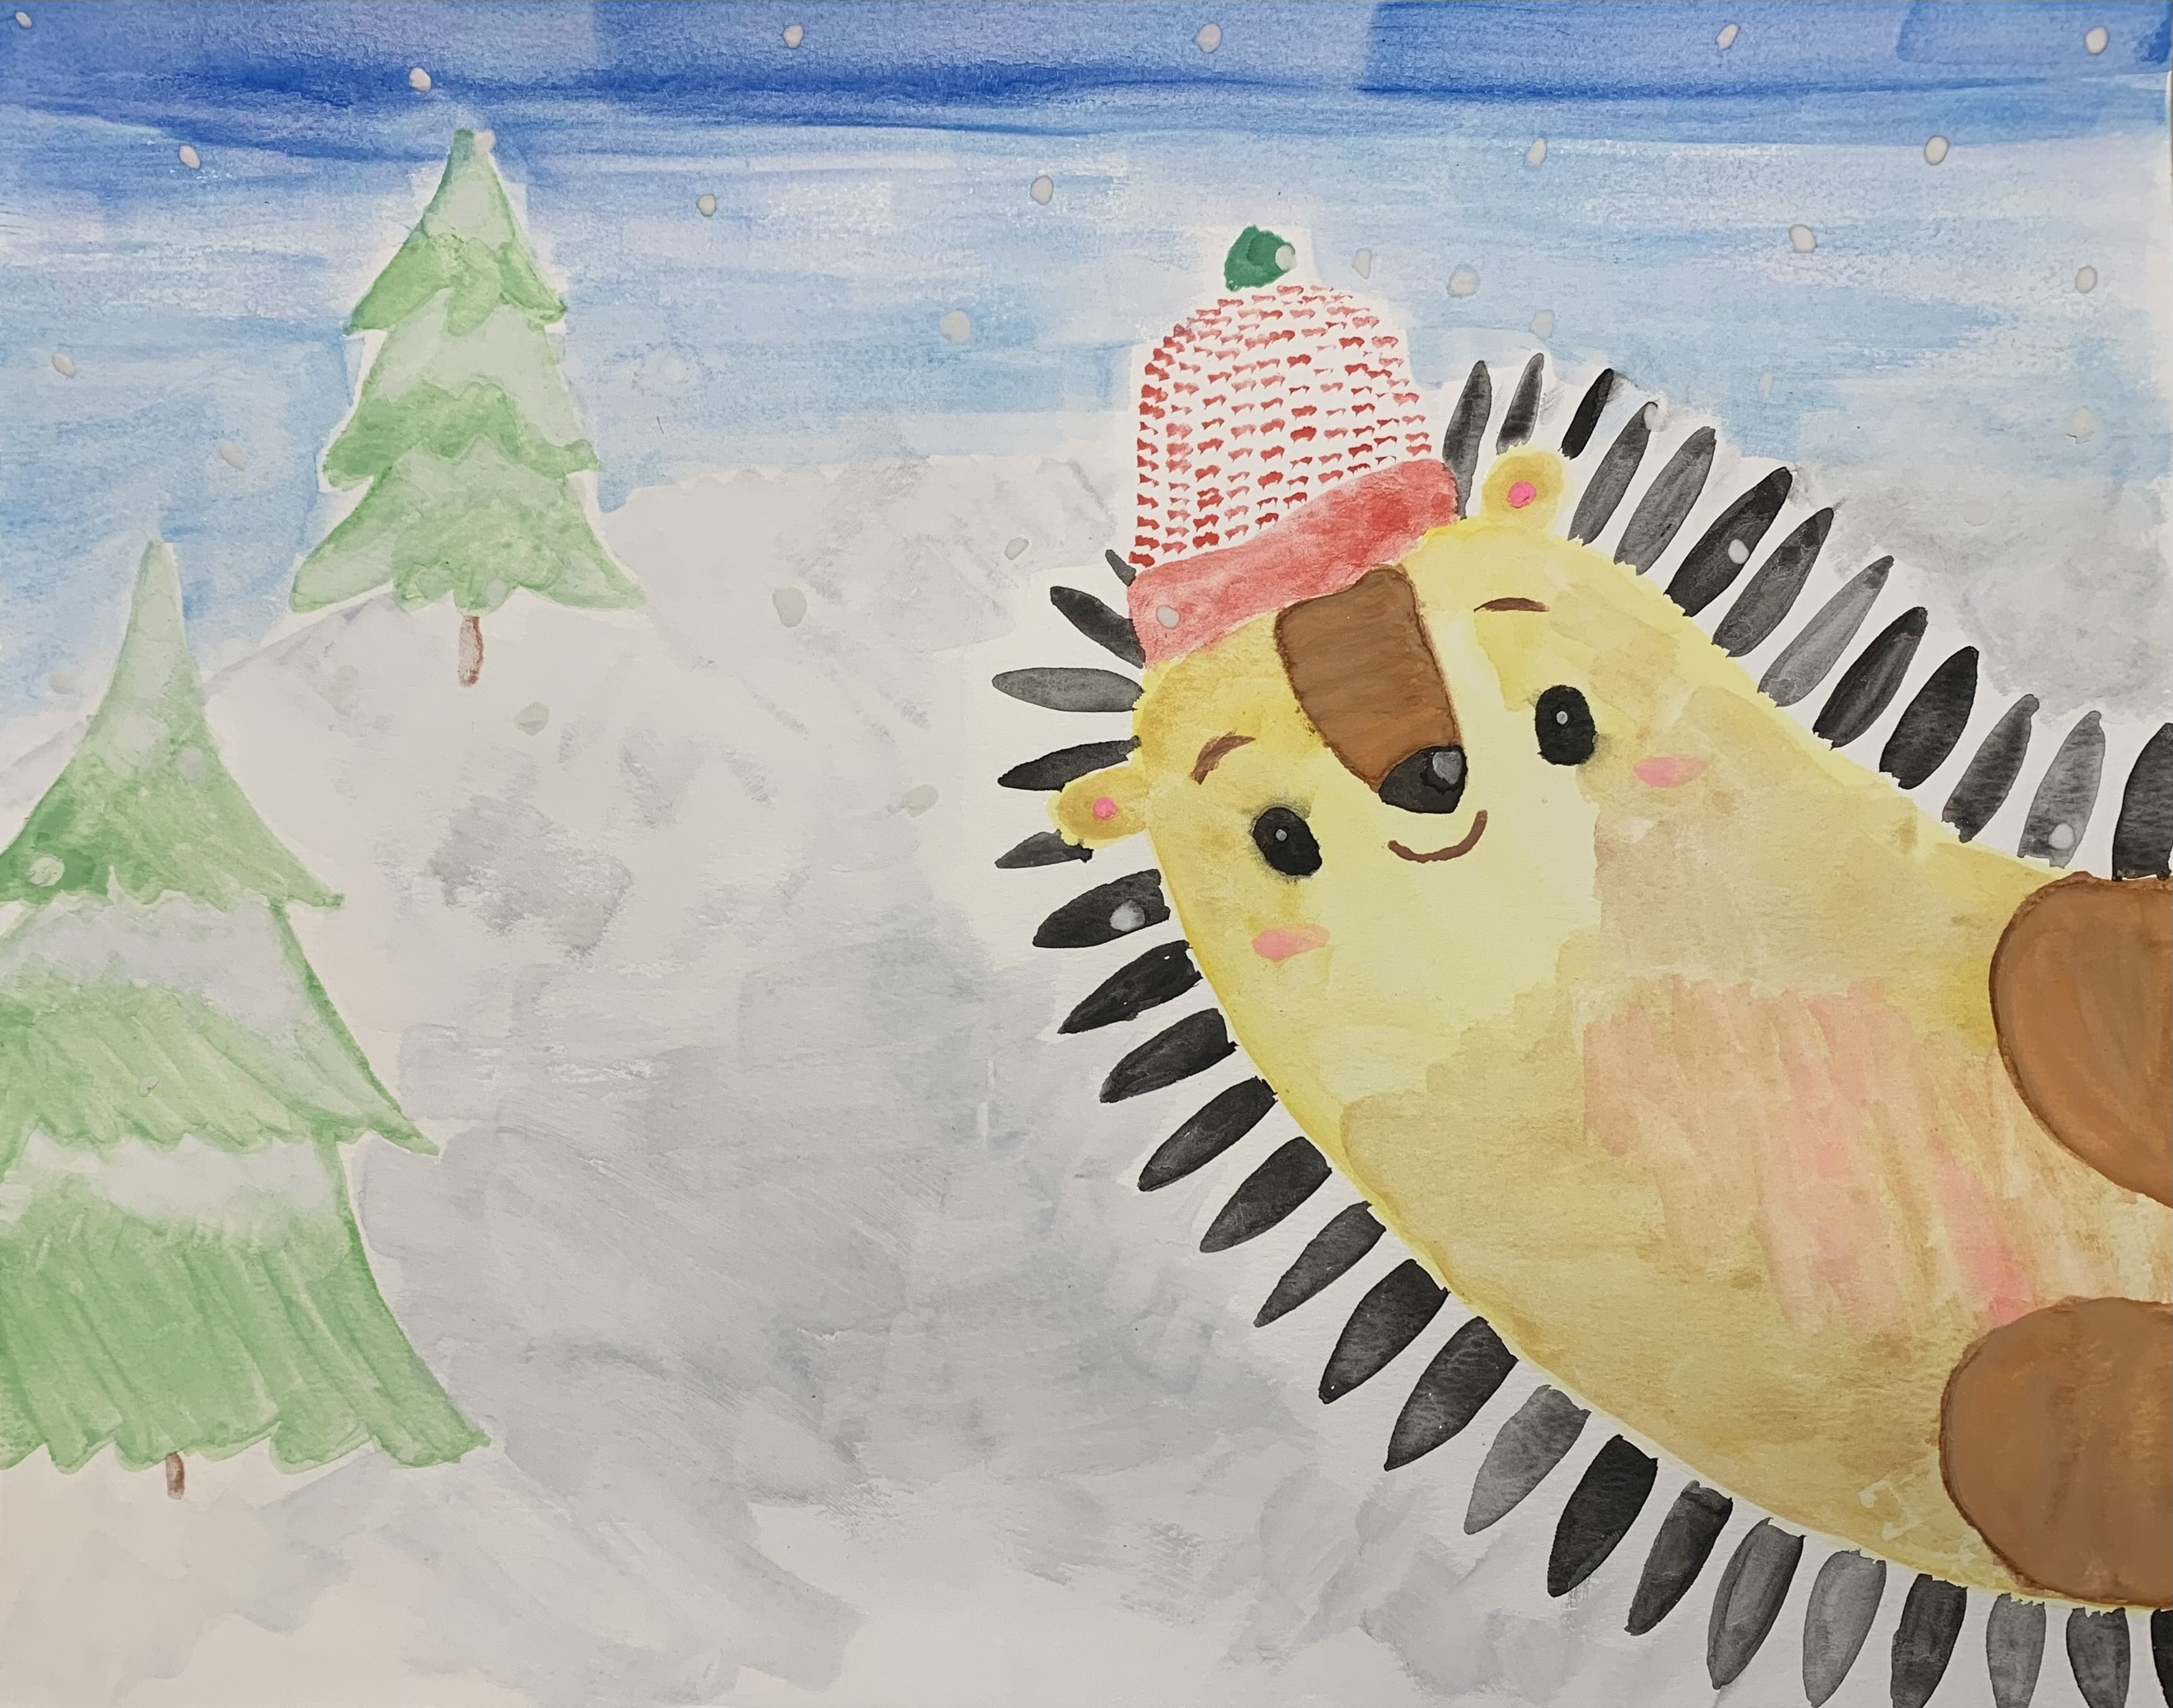 Hedgehog in front of winter scene